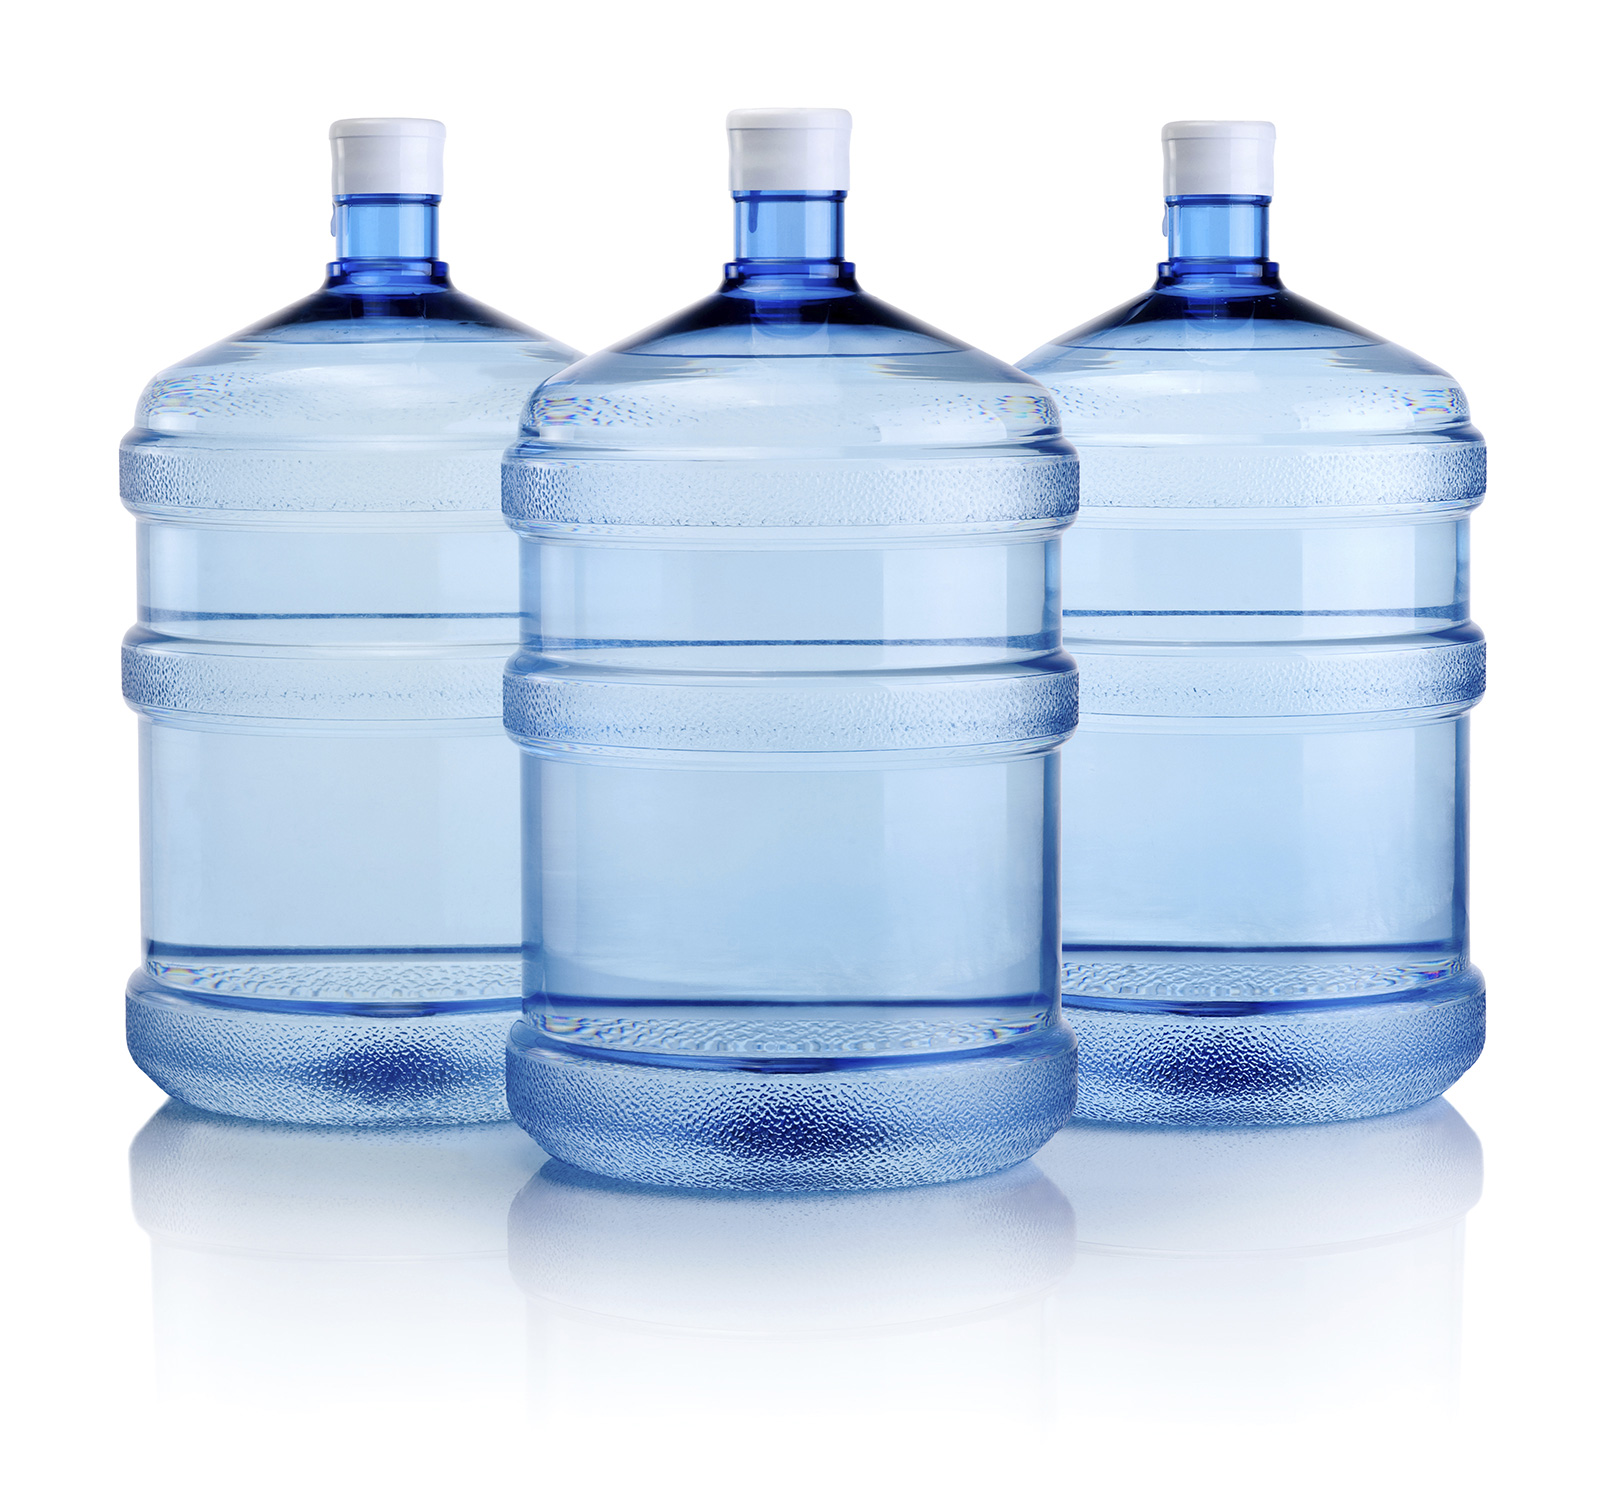 Синяя минеральная вода. Бутилированная вода. Бутылка для воды. Вода в бутылях. Бутилированная вода бутылка.